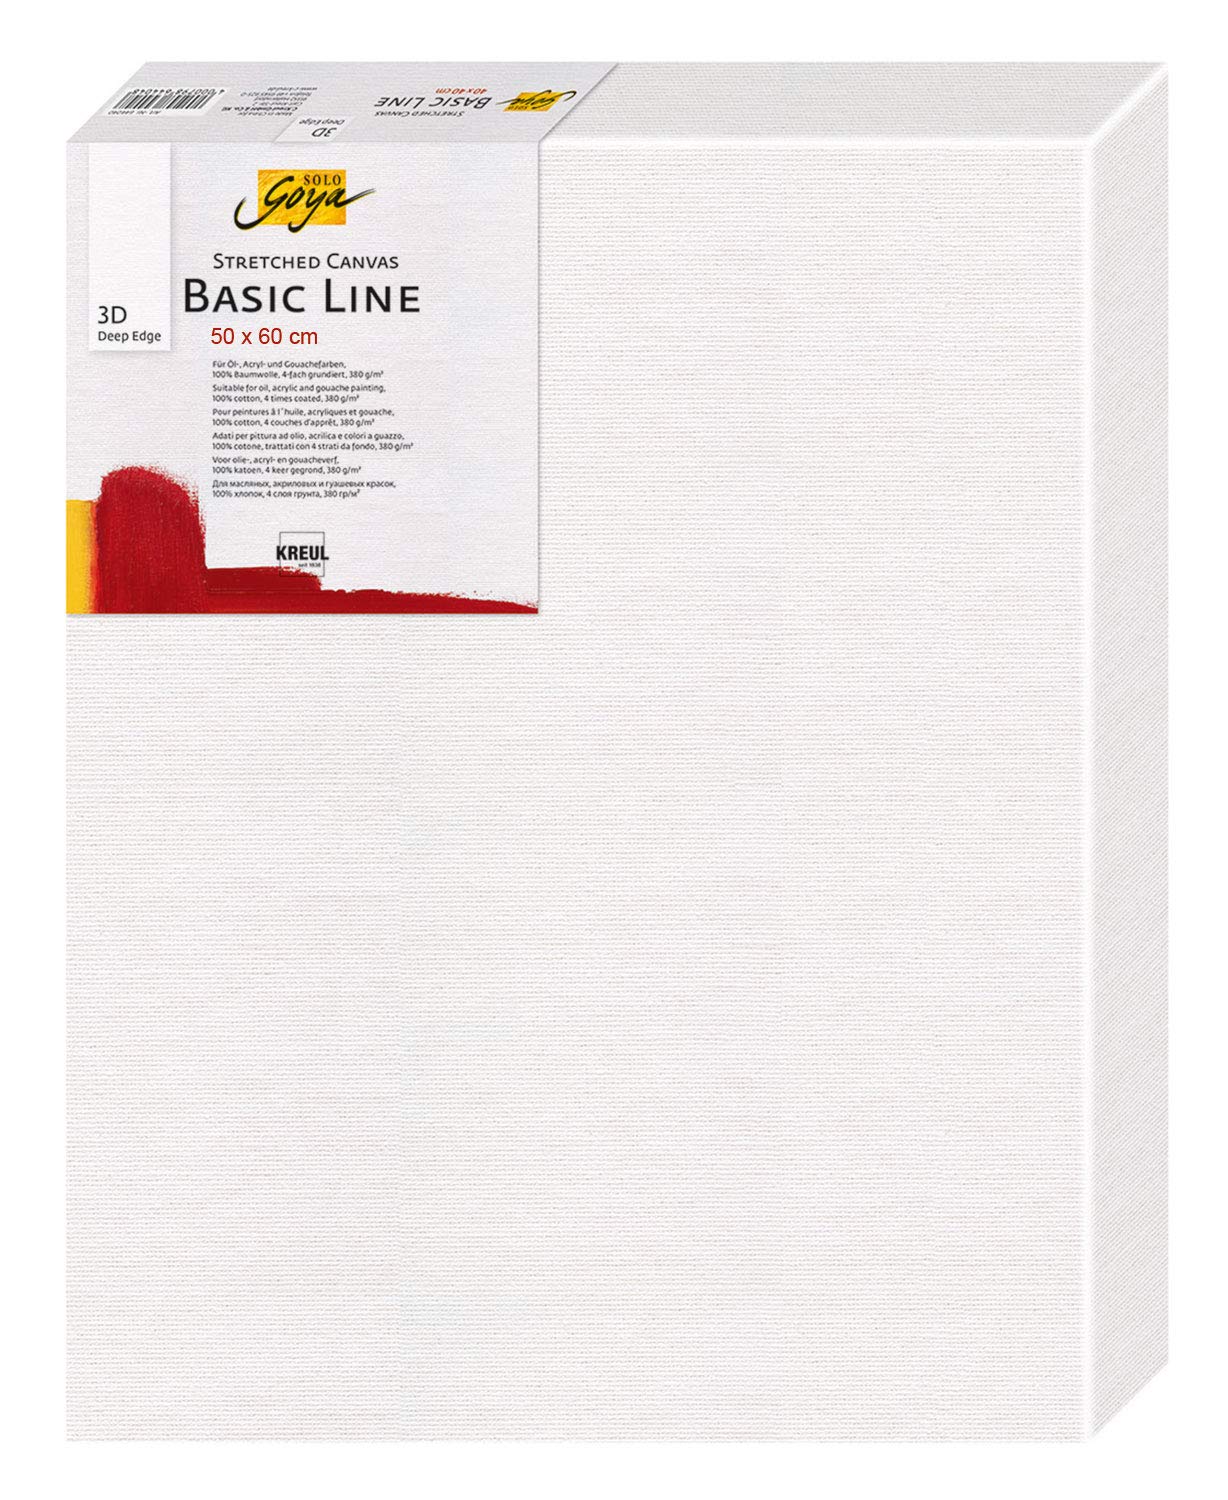 KREUL 645060 - Solo Goya 3D Stretched Canvas Basic Line, Keilrahmen 50 x 60 cm, extra tief ca. 3,8 cm, 100 % Baumwolle 4 fach grundiert, ideal für Öl-, Acryl- und Gouachefarben